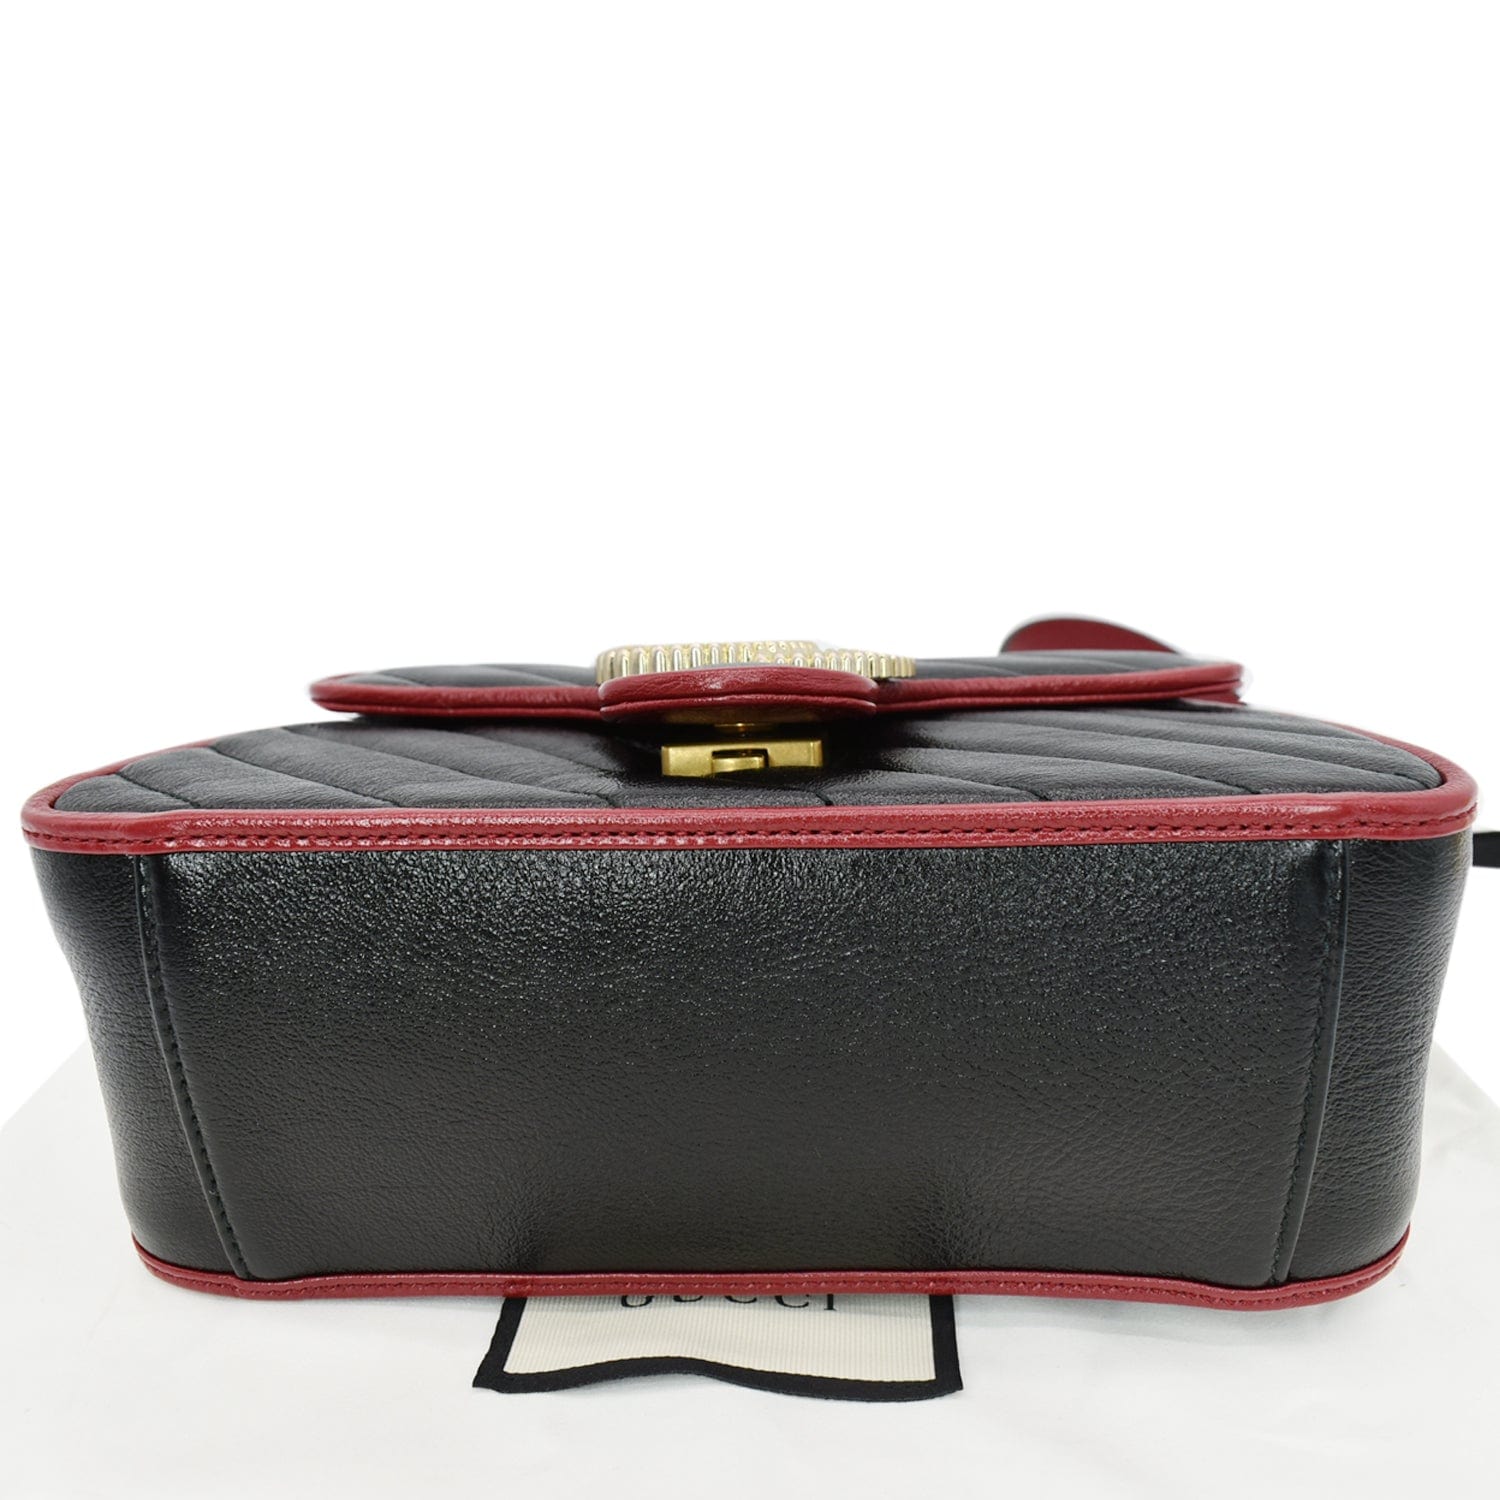 Gucci Navy Leather Torchon GG Marmont Crossbody Bag QFB3QI1LNH007